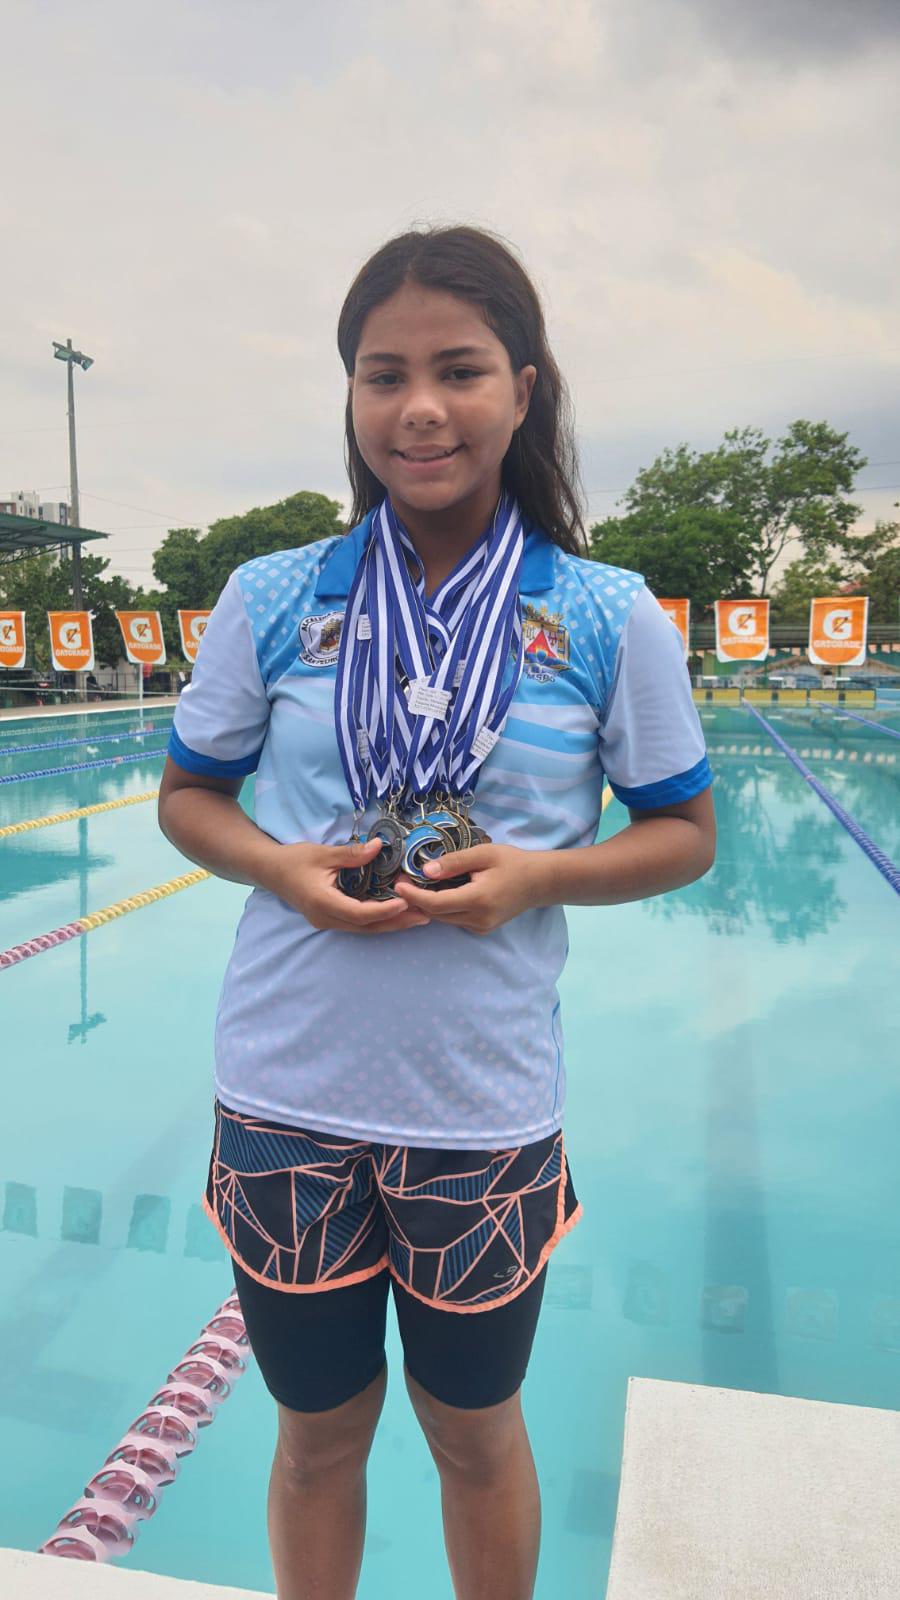 La pequeña nadadora a sus 12 años ha acumulado muchas medallas en competencias nacionales e internacionales.